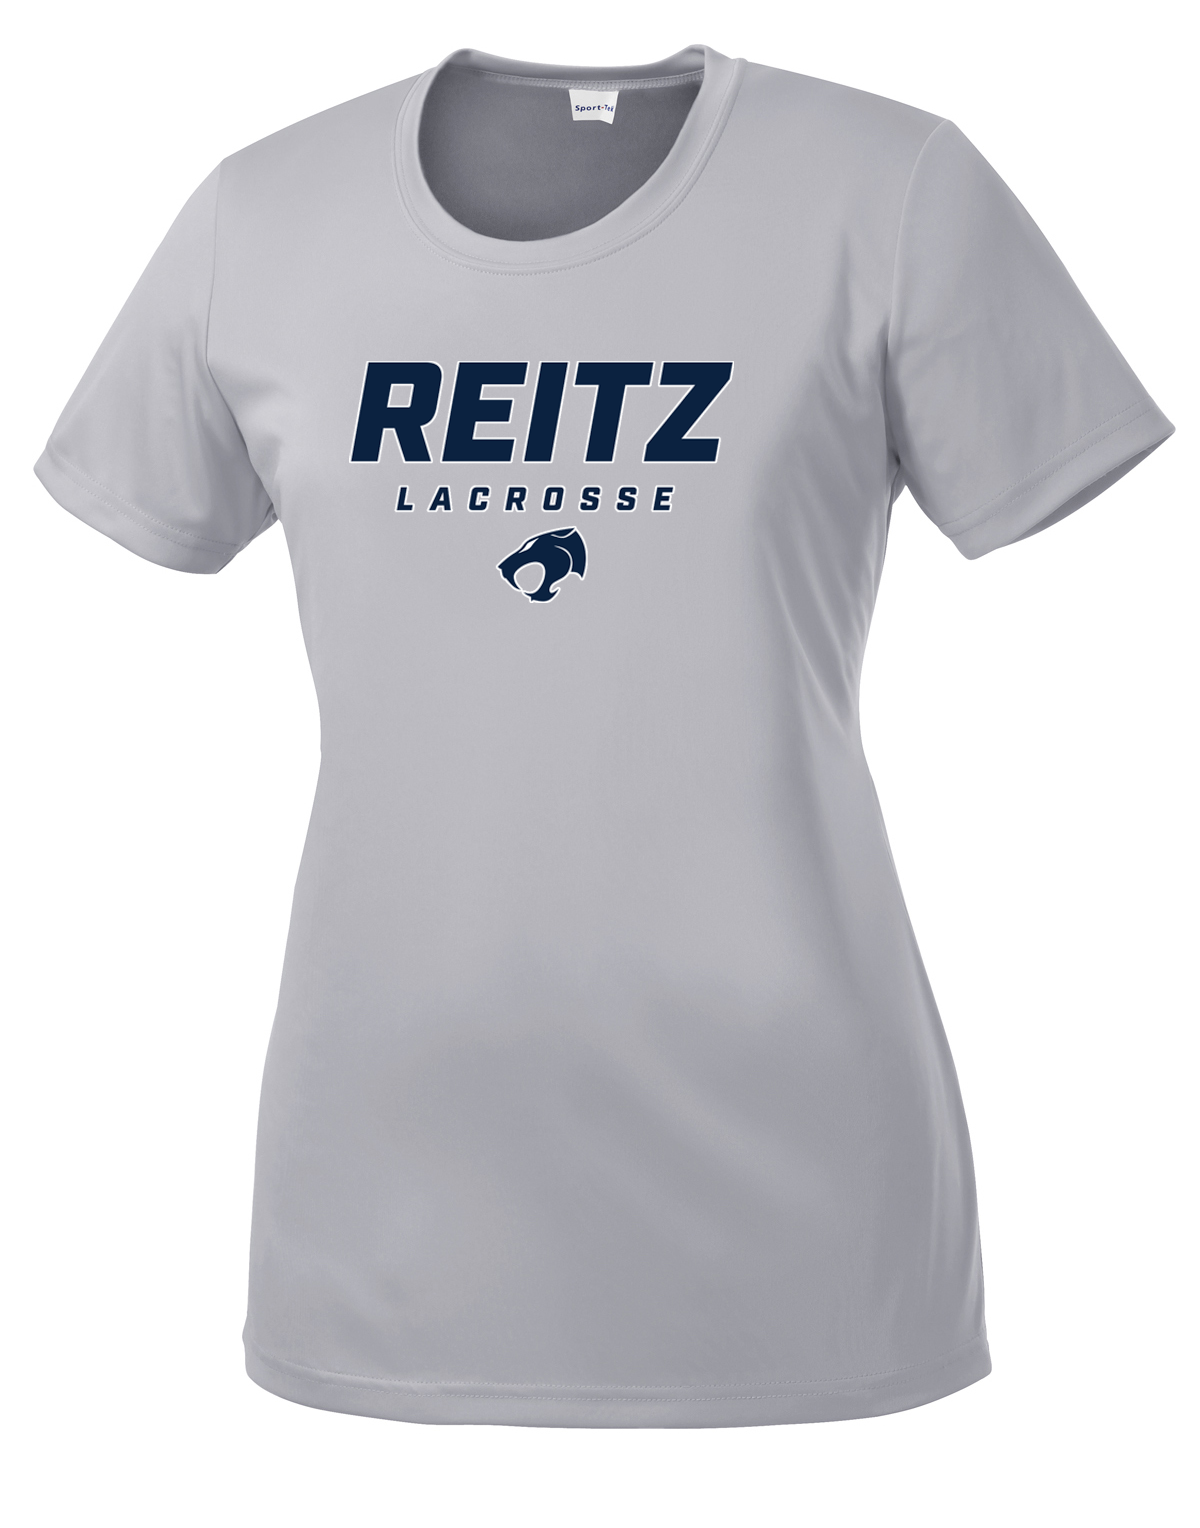 Reitz Lacrosse Women's Silver CottonTouch Performance T-Shirt